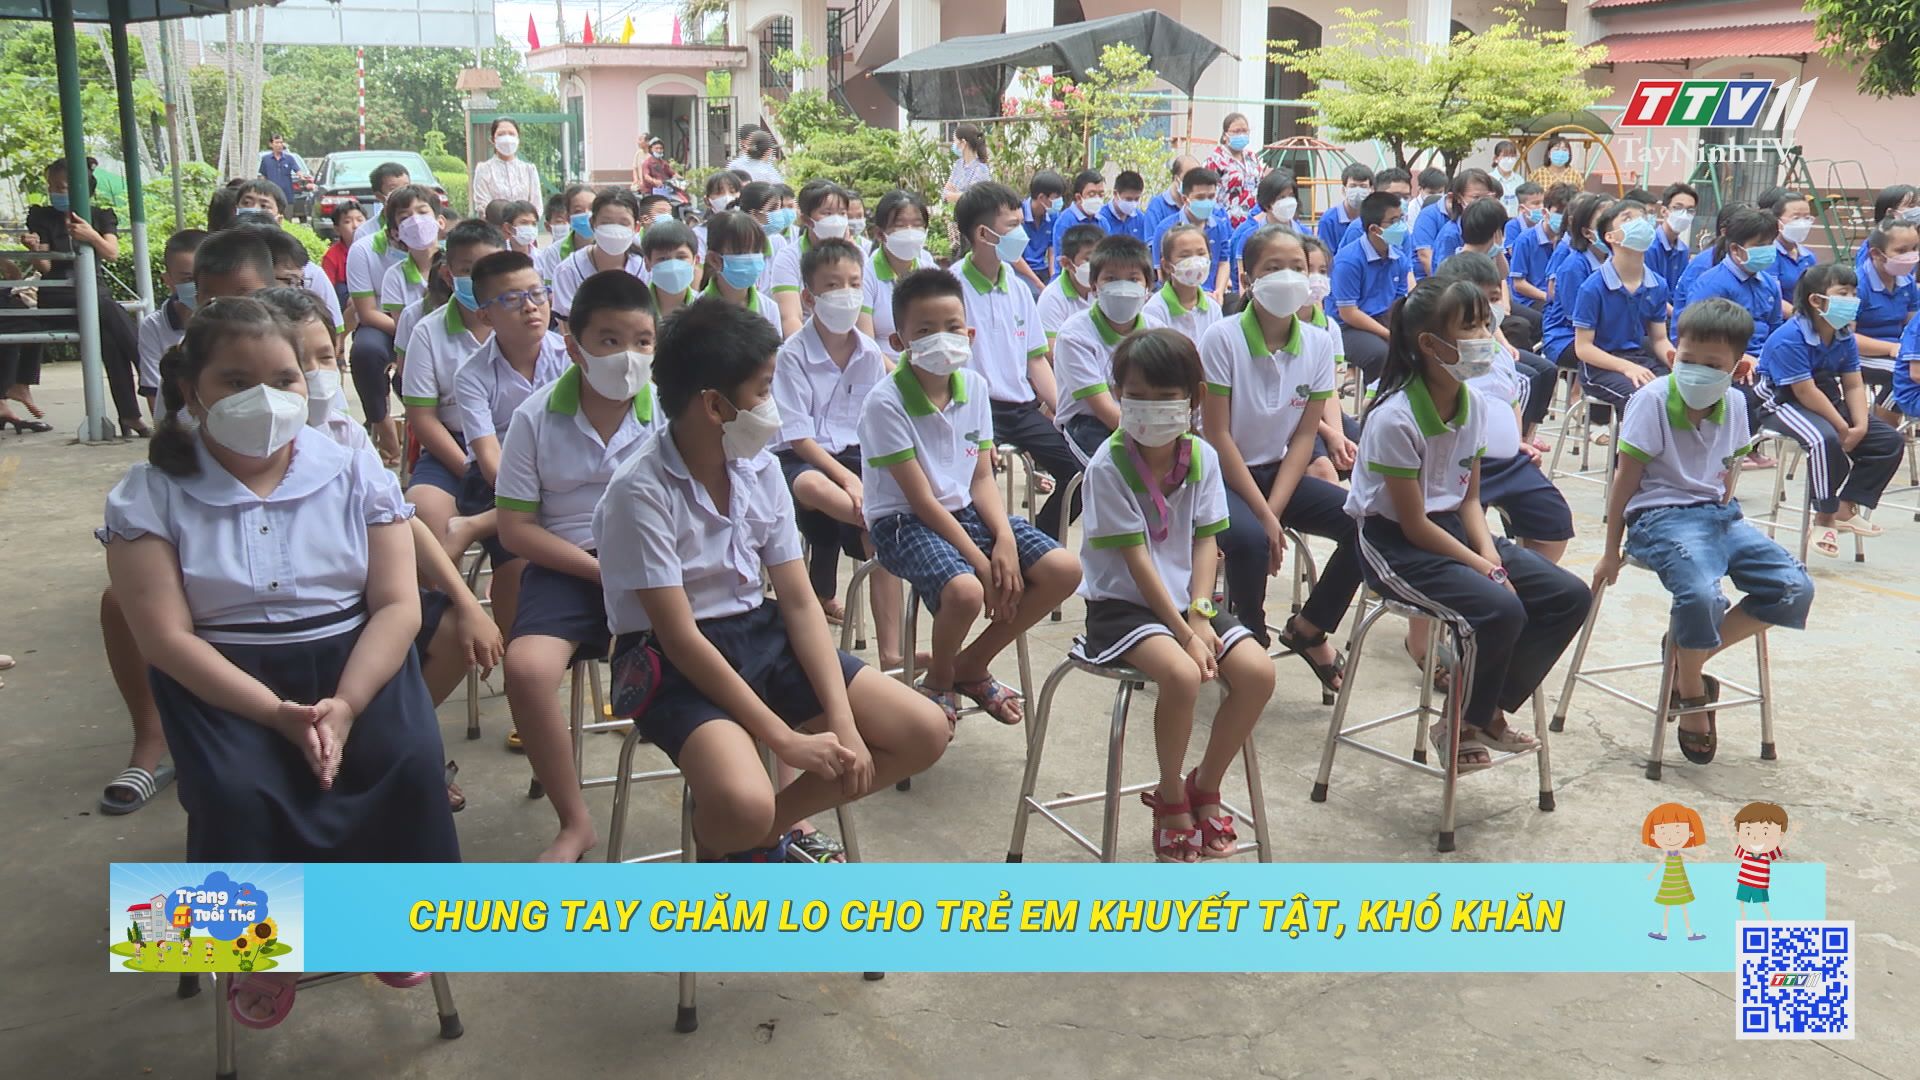 Chung tay chăm lo cho trẻ em khuyết tật, khó khăn | Trang tuổi thơ | TayNinhTV